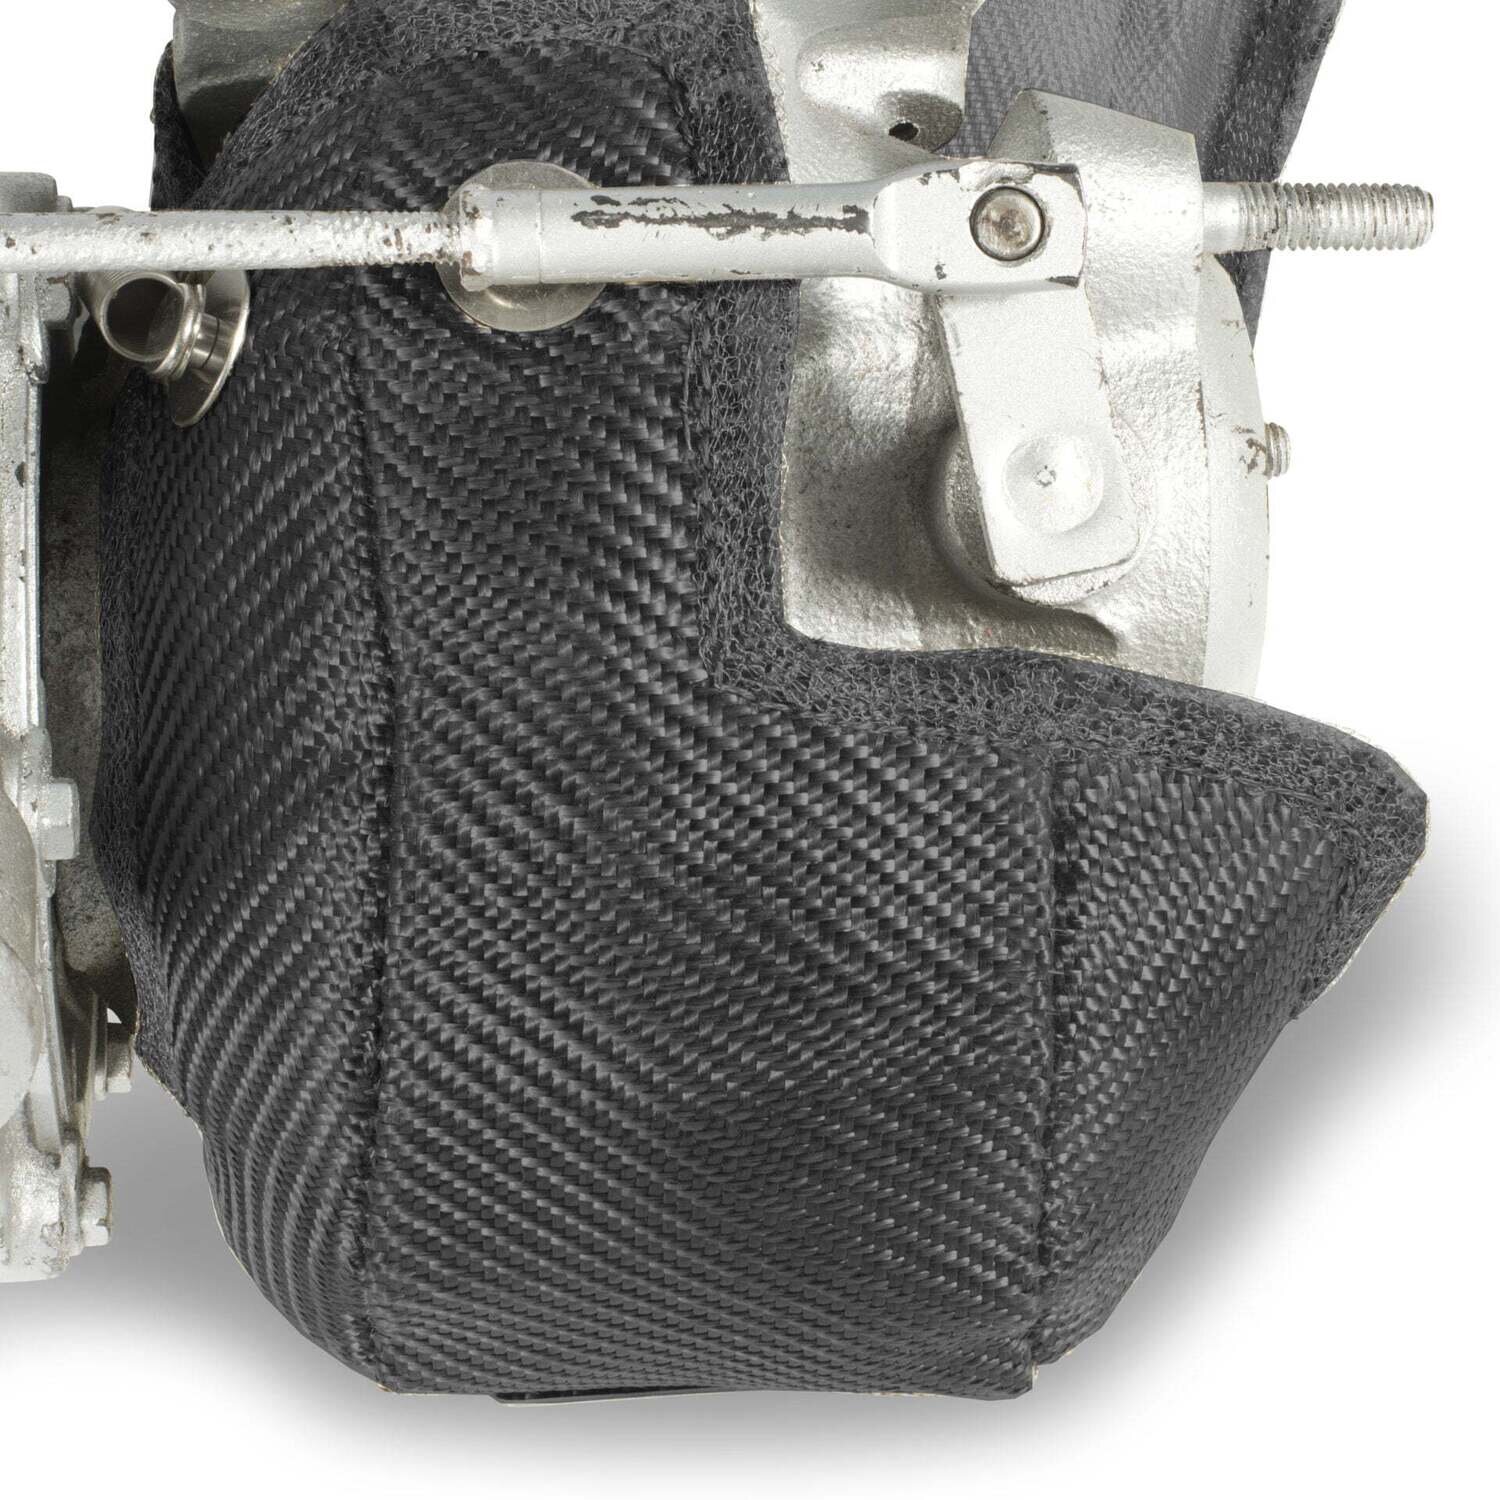 Borg Warner kkk K04-20 Turbo Blanket - Carbon Fibre